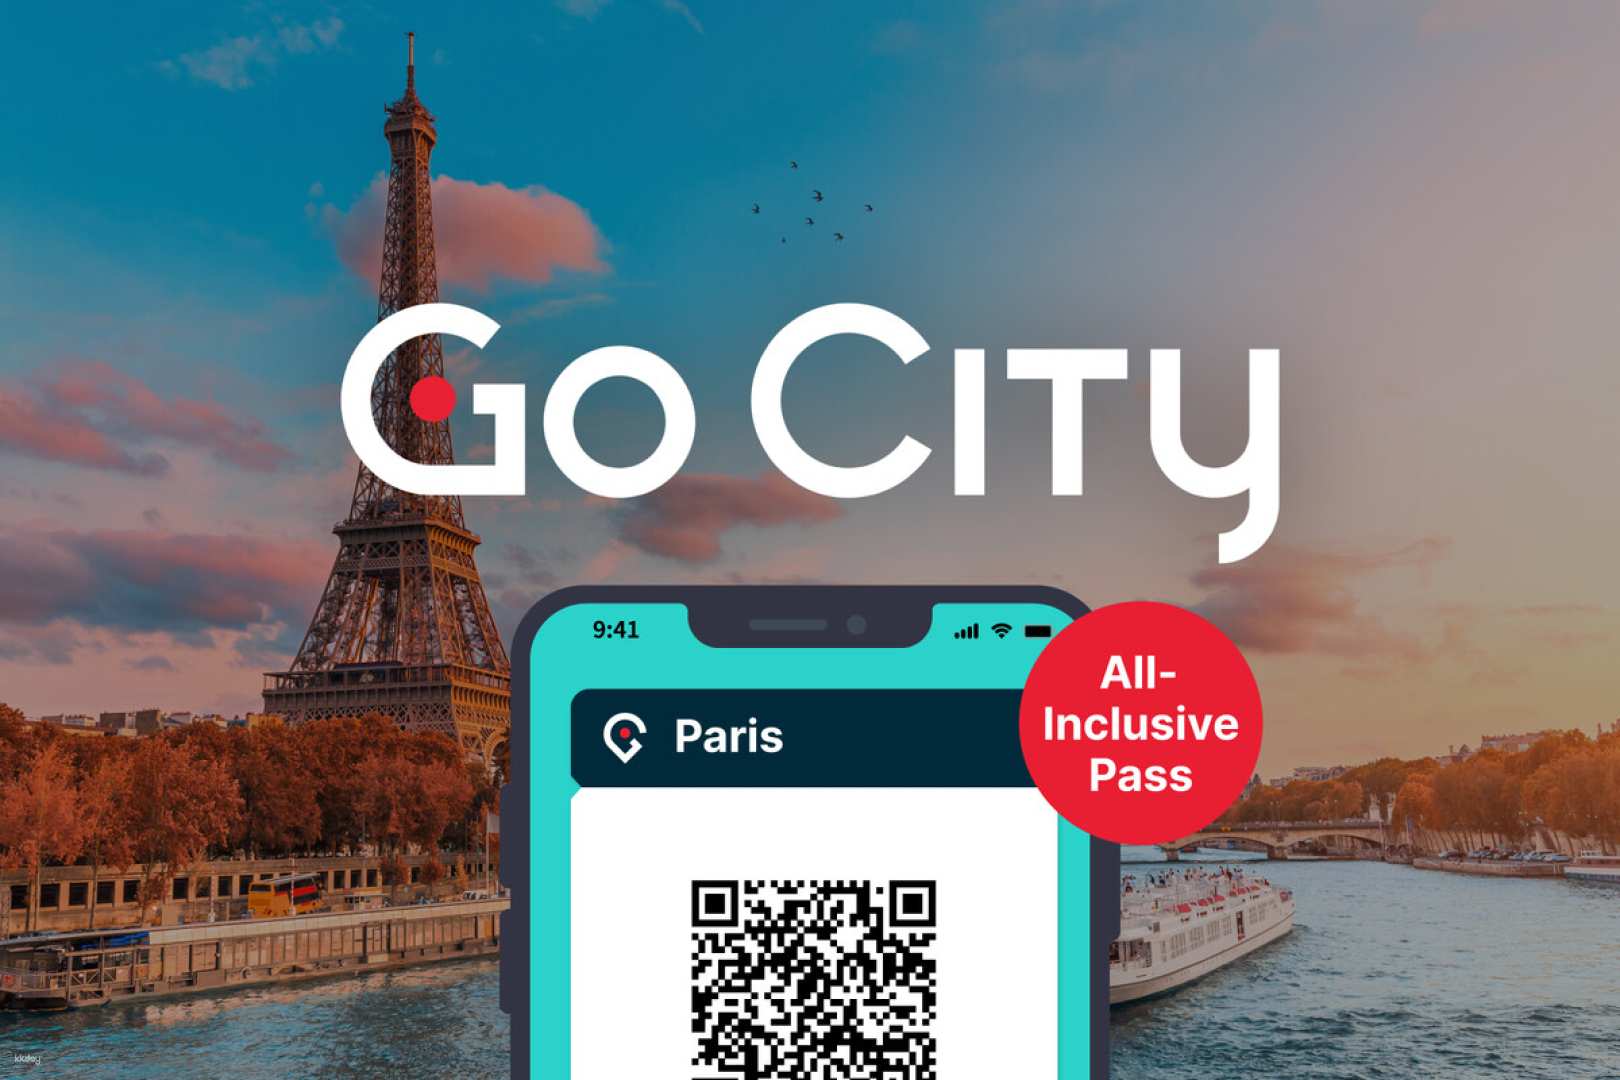 法國-巴黎Go City 旅城通票( Go City Paris All-Inclusive Pass)| 可選效期